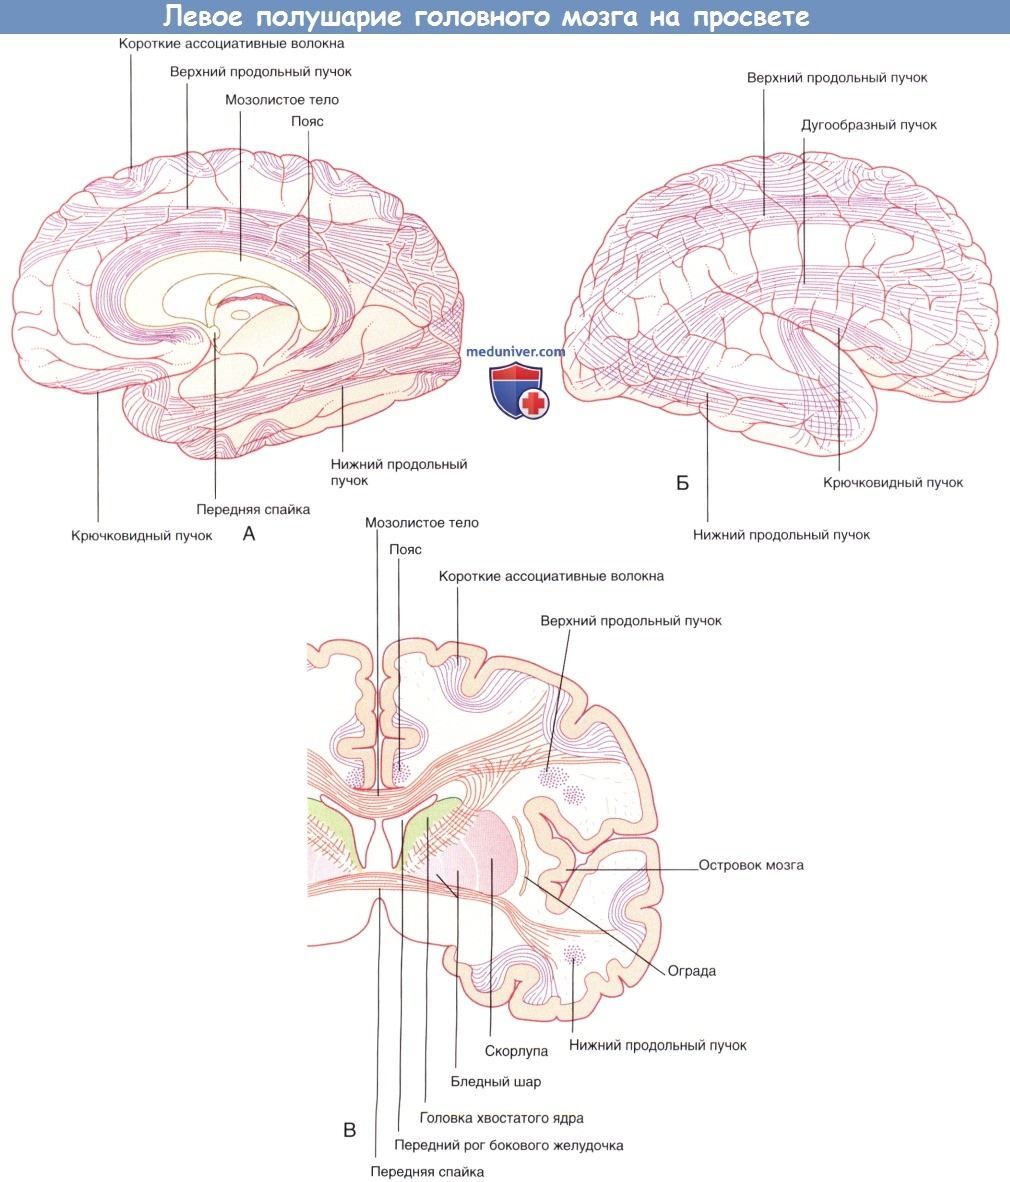 Левое полушарие головного мозга